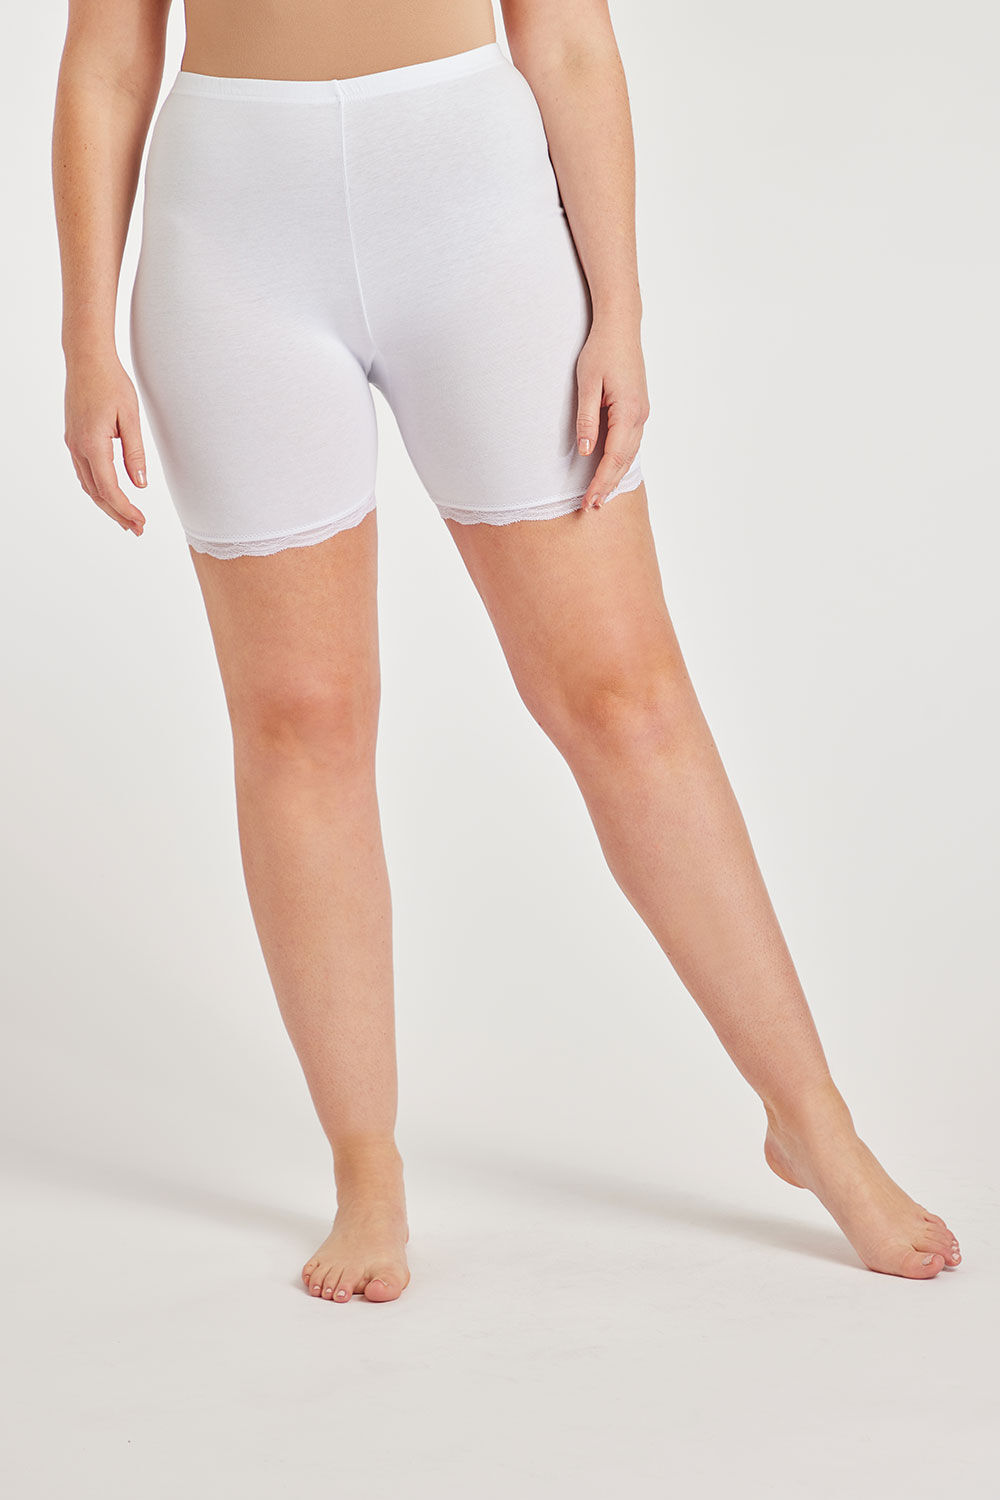 Bonmarche White Anti-Chafing Shorts, Size: 20-22